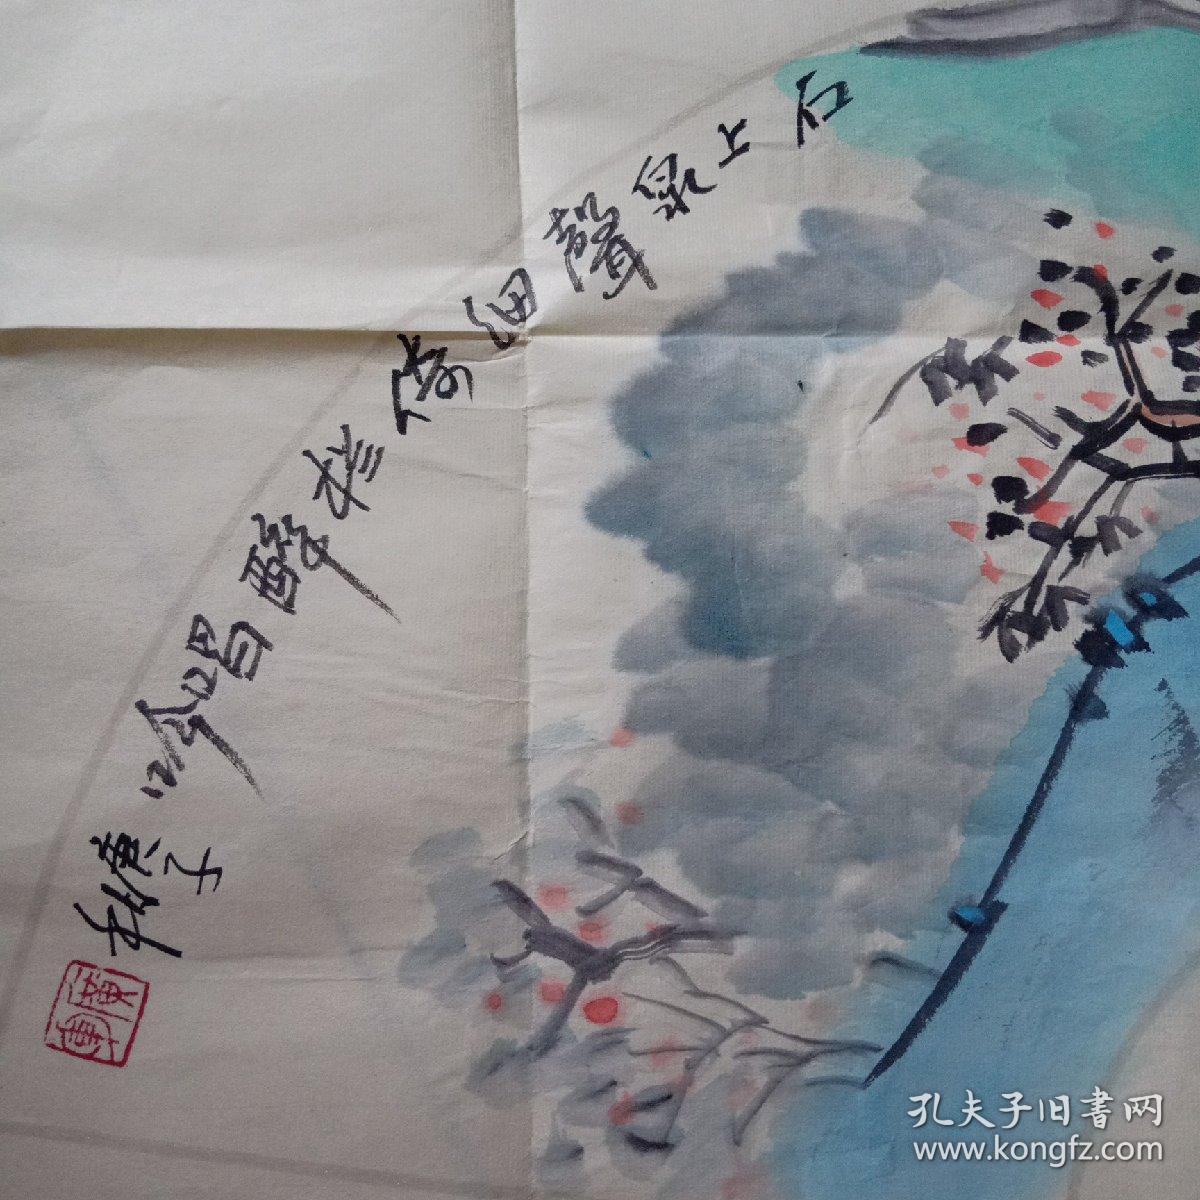 陕西著名画家刘广军参展书画作品一幅68.5乘以33.5.保真品佳见图